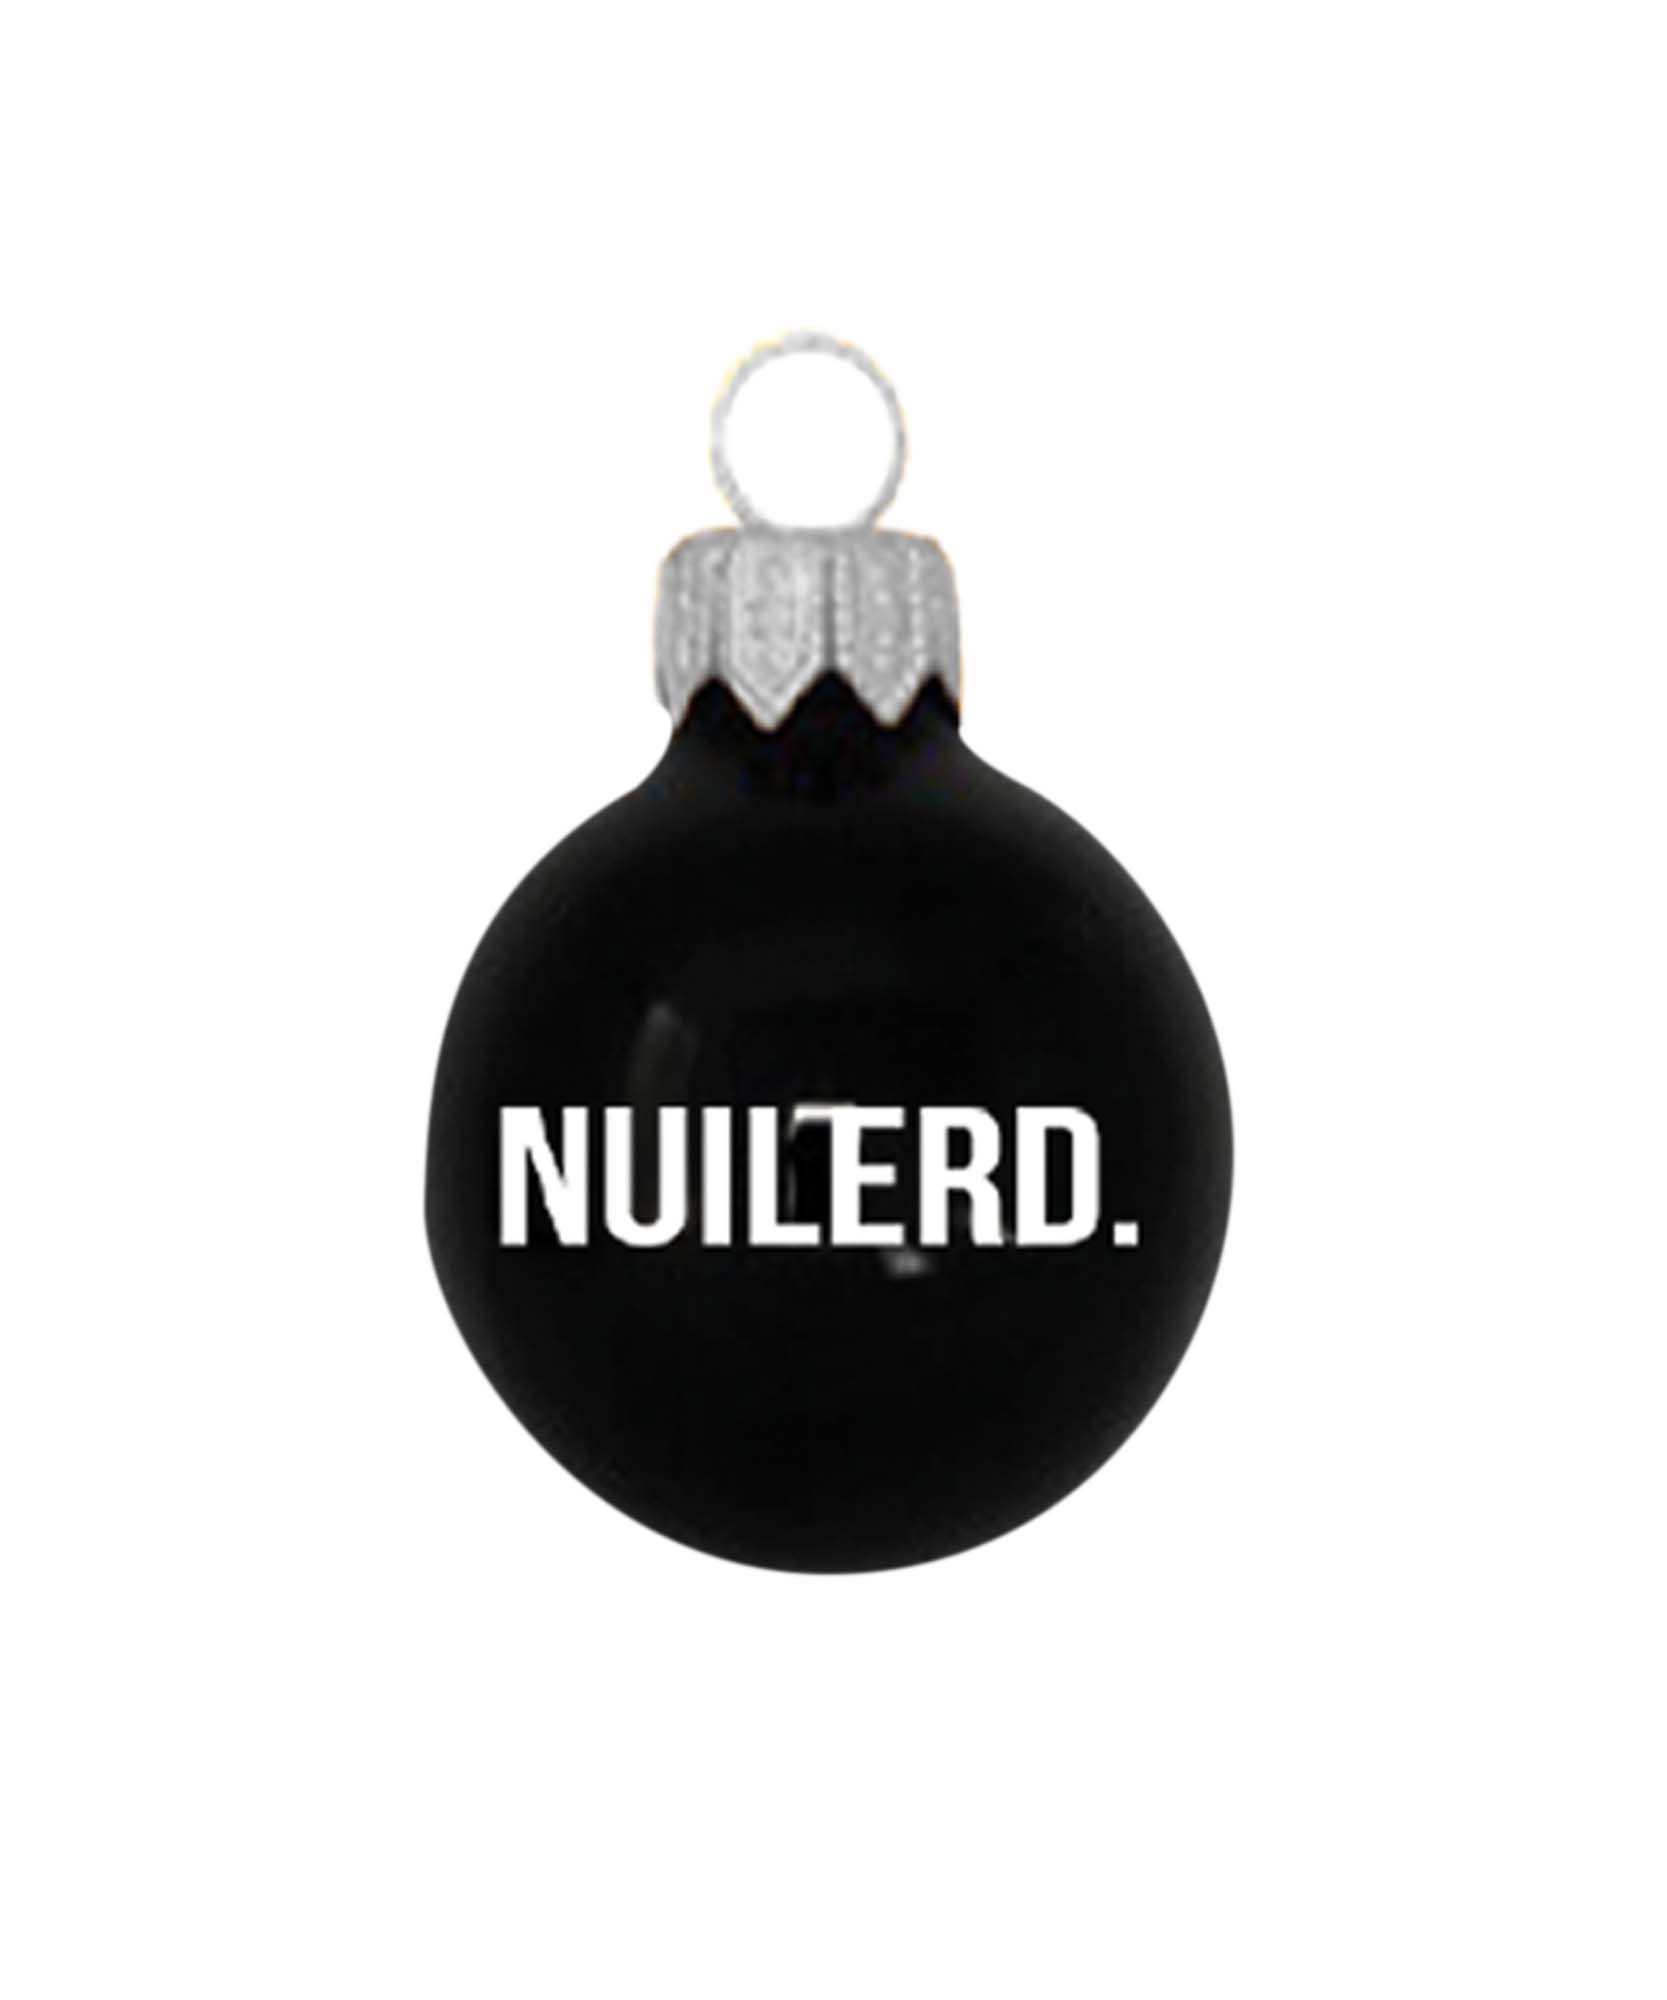 Prachtige zwarte kerstbal met 'NUILERD' erop voor Kerstmis. een must-have voor in de kerstboom.